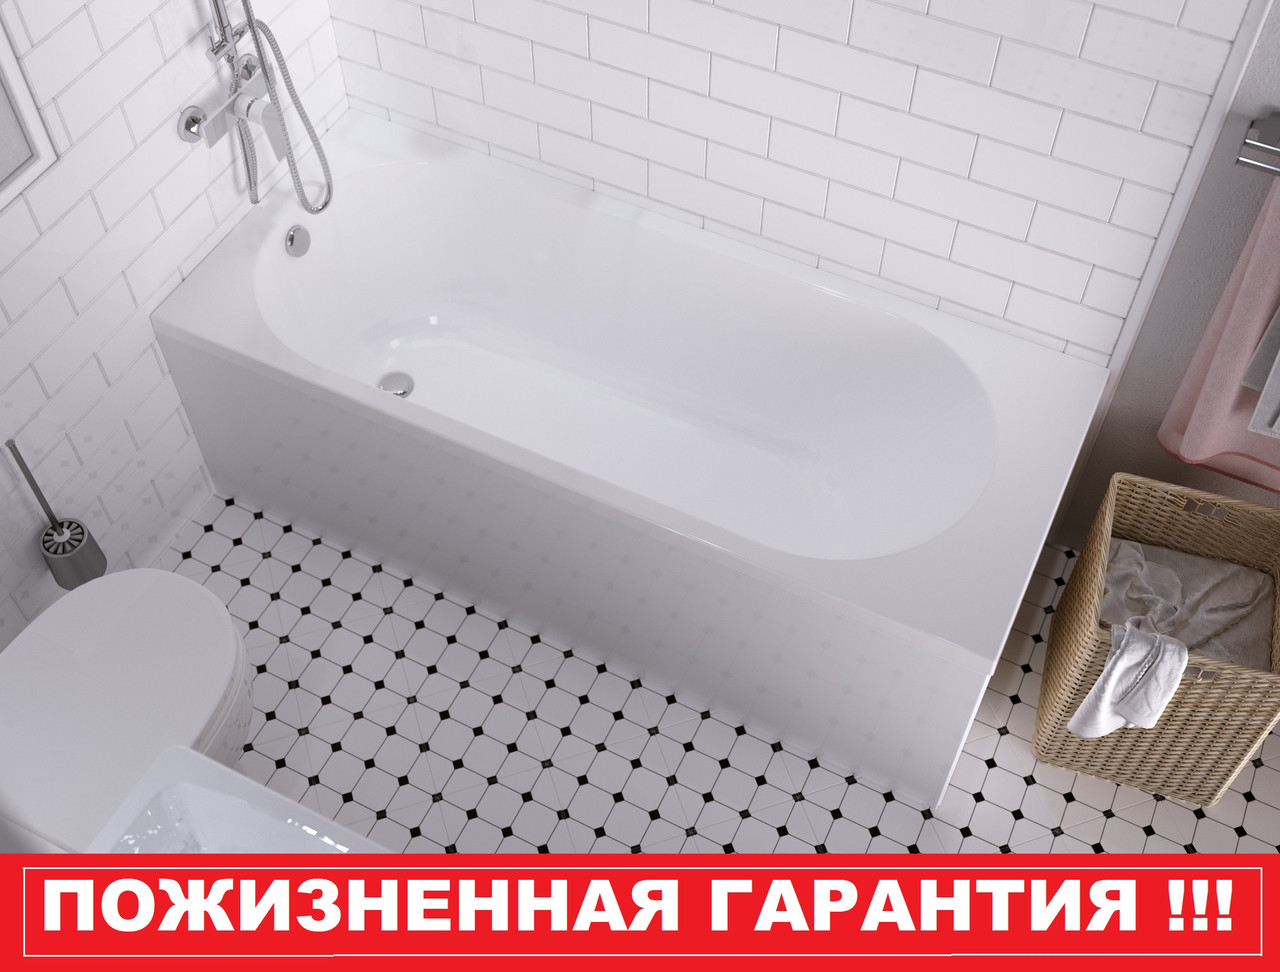 Акриловая ванна Atlas (160*70) см. 1 Marka. Россия